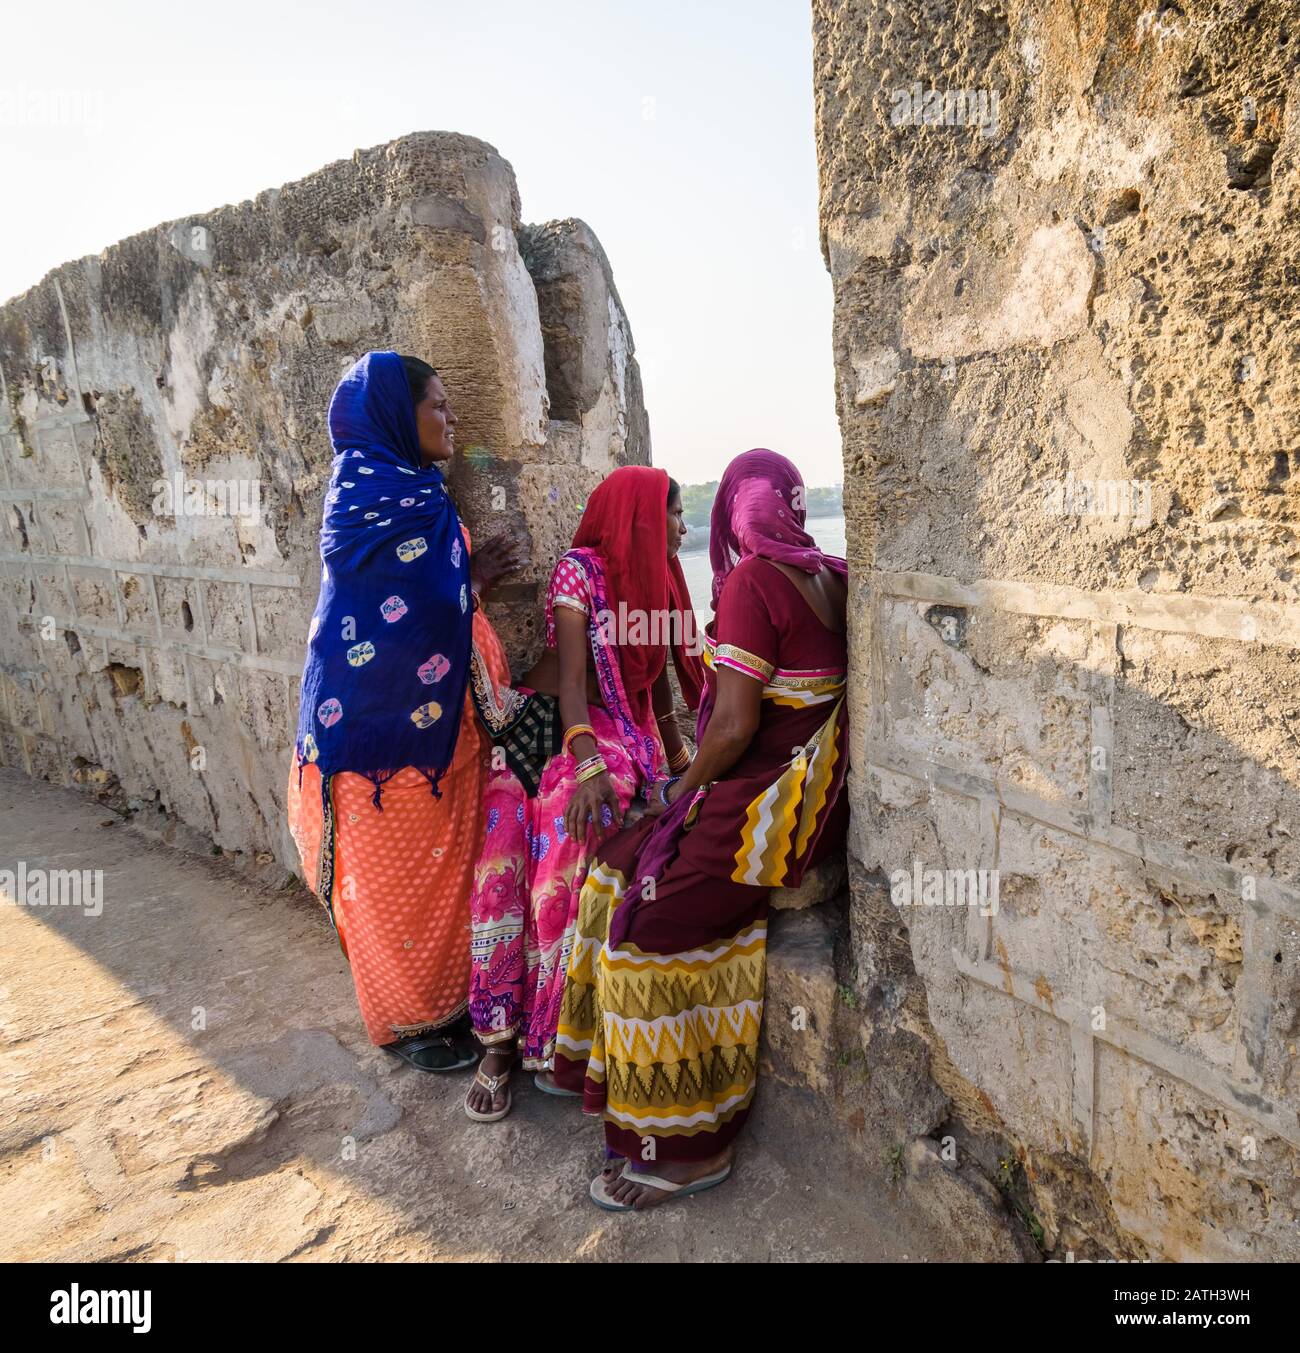 Ein ehrlicher Schuss von drei Frauen, die mit bunten, ethnischen indianischen Sarenen bekleidet sind, die auf den Wällen der alten Portugiesen sitzen, die das Diu Fort erbaut haben. Stockfoto